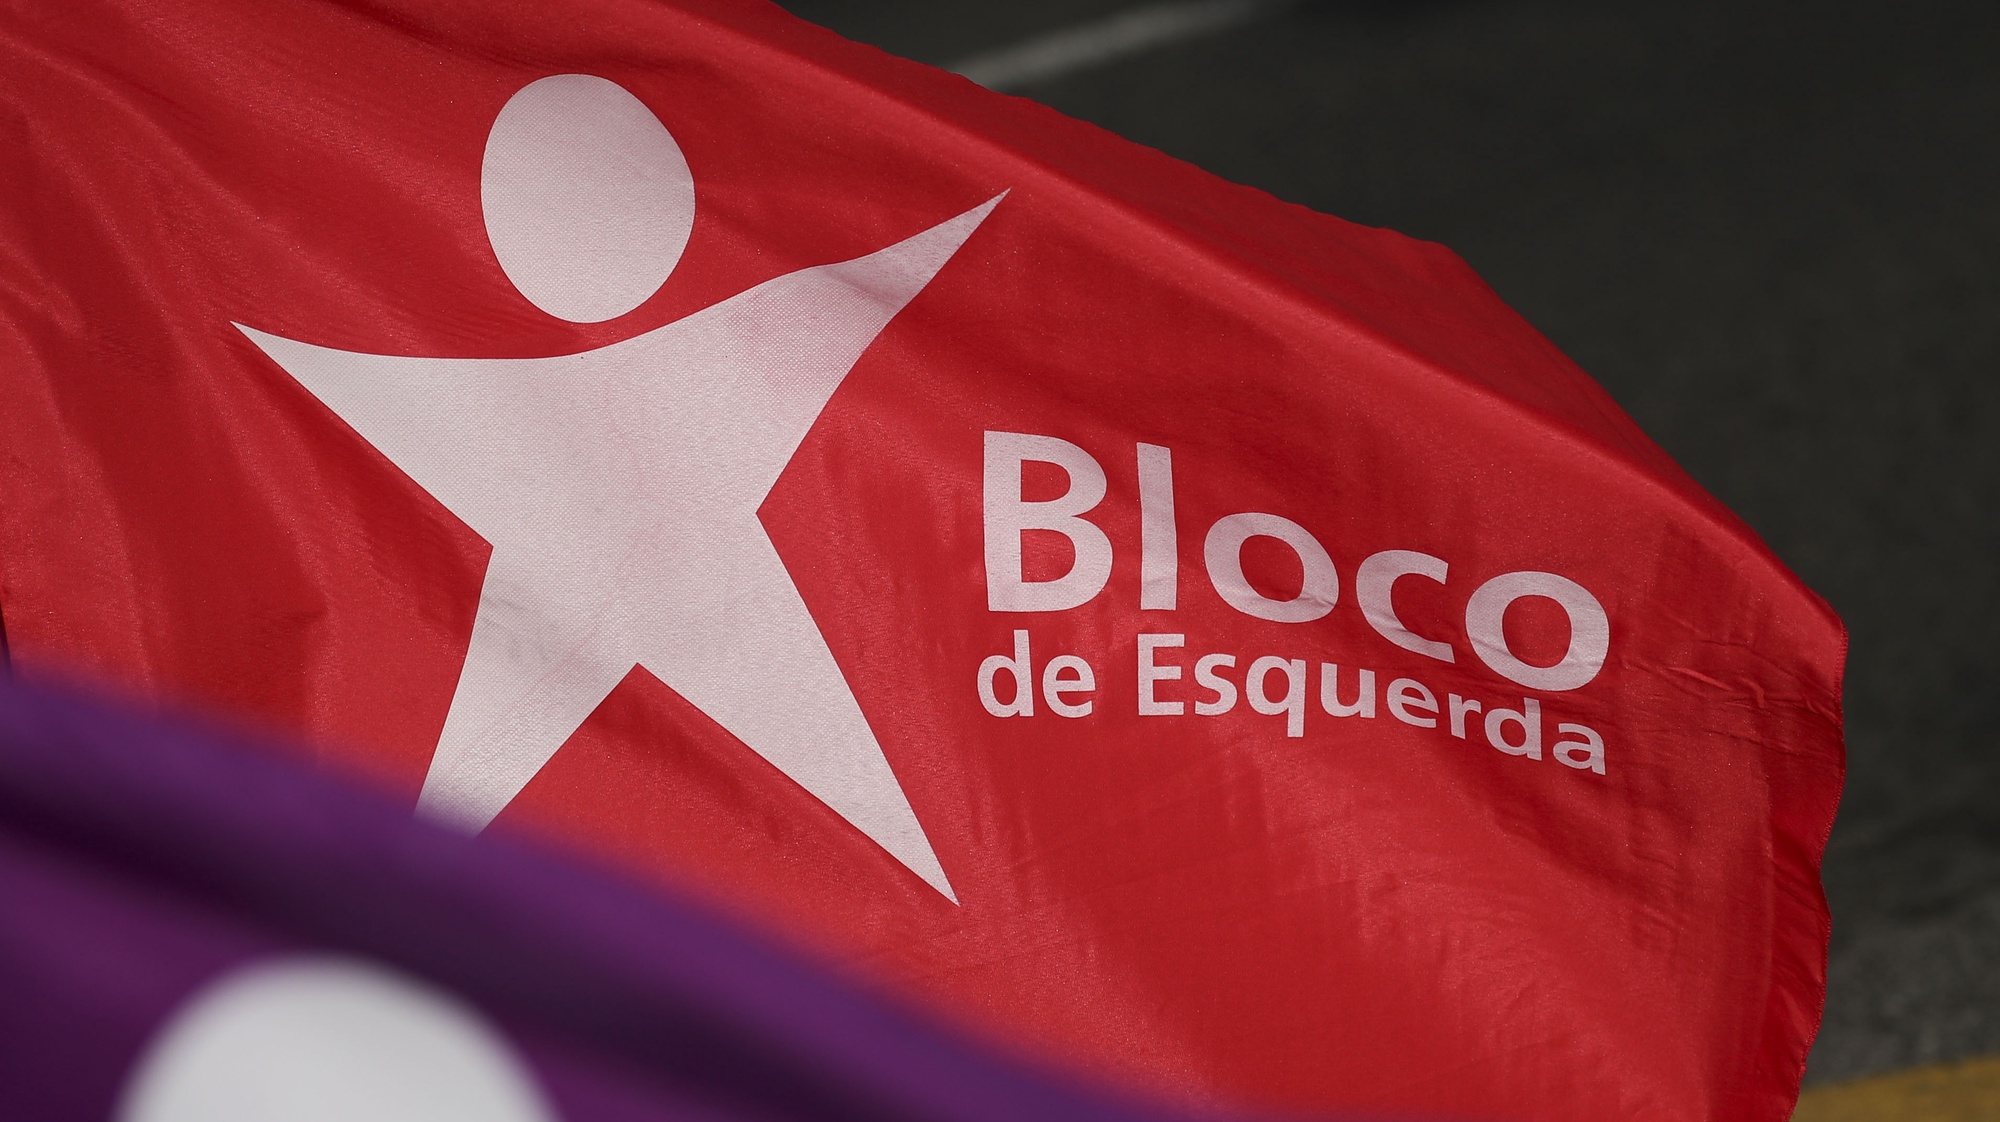 Bandeiras do Bloco de Esquerda, Lisboa, 7 de julho de 2019.  ANTÓNIO COTRIM/LUSA